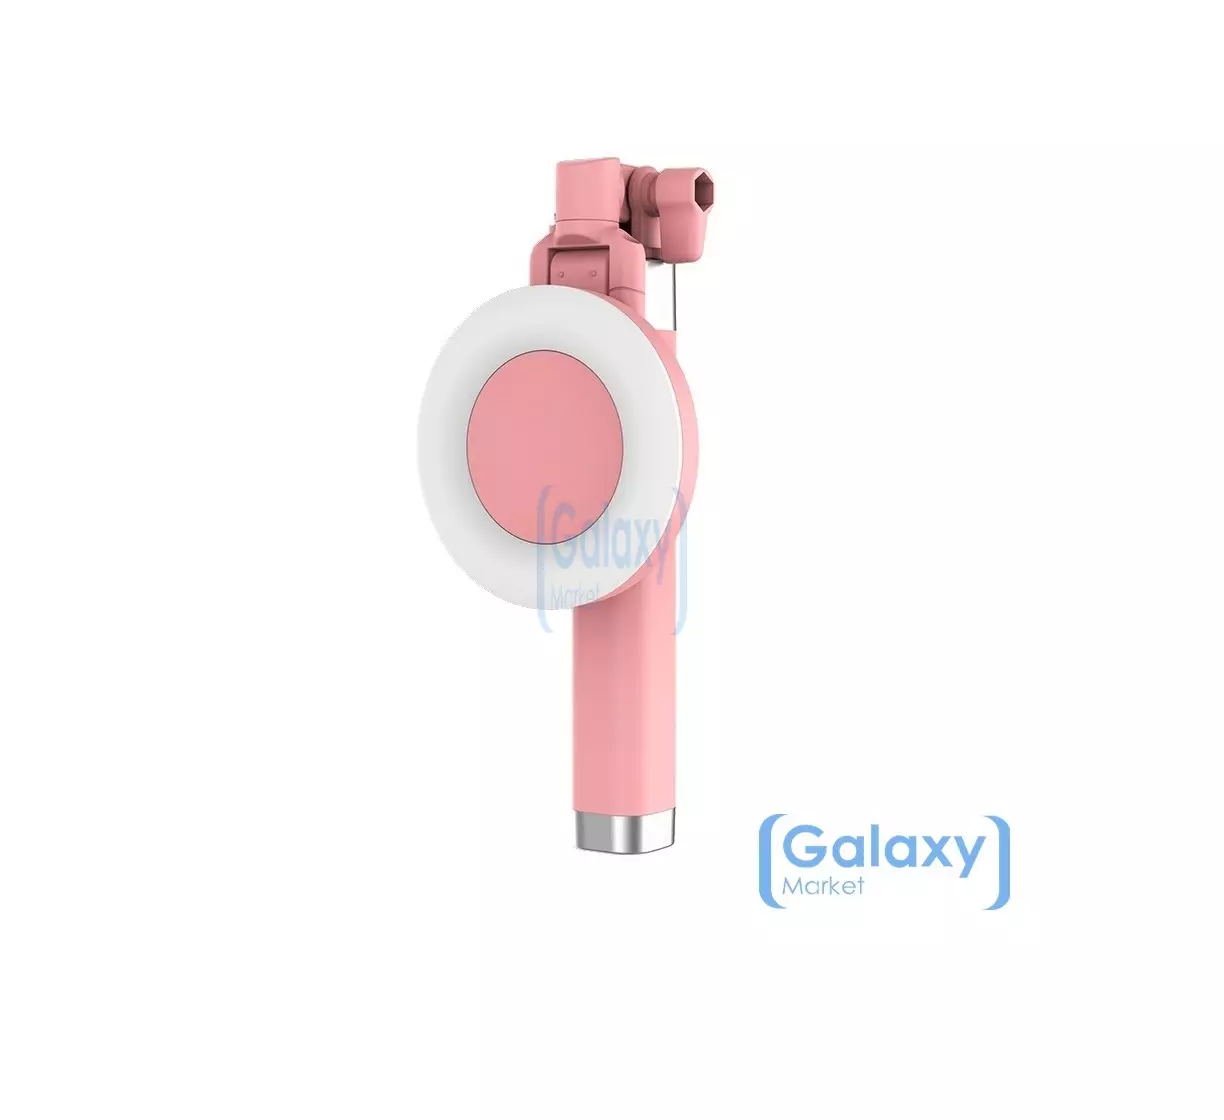 Оригинальная селфи палка Rock c светодиодной подсветкой для Apple iPhone смартфонов Pink (Розовый) ROT0770